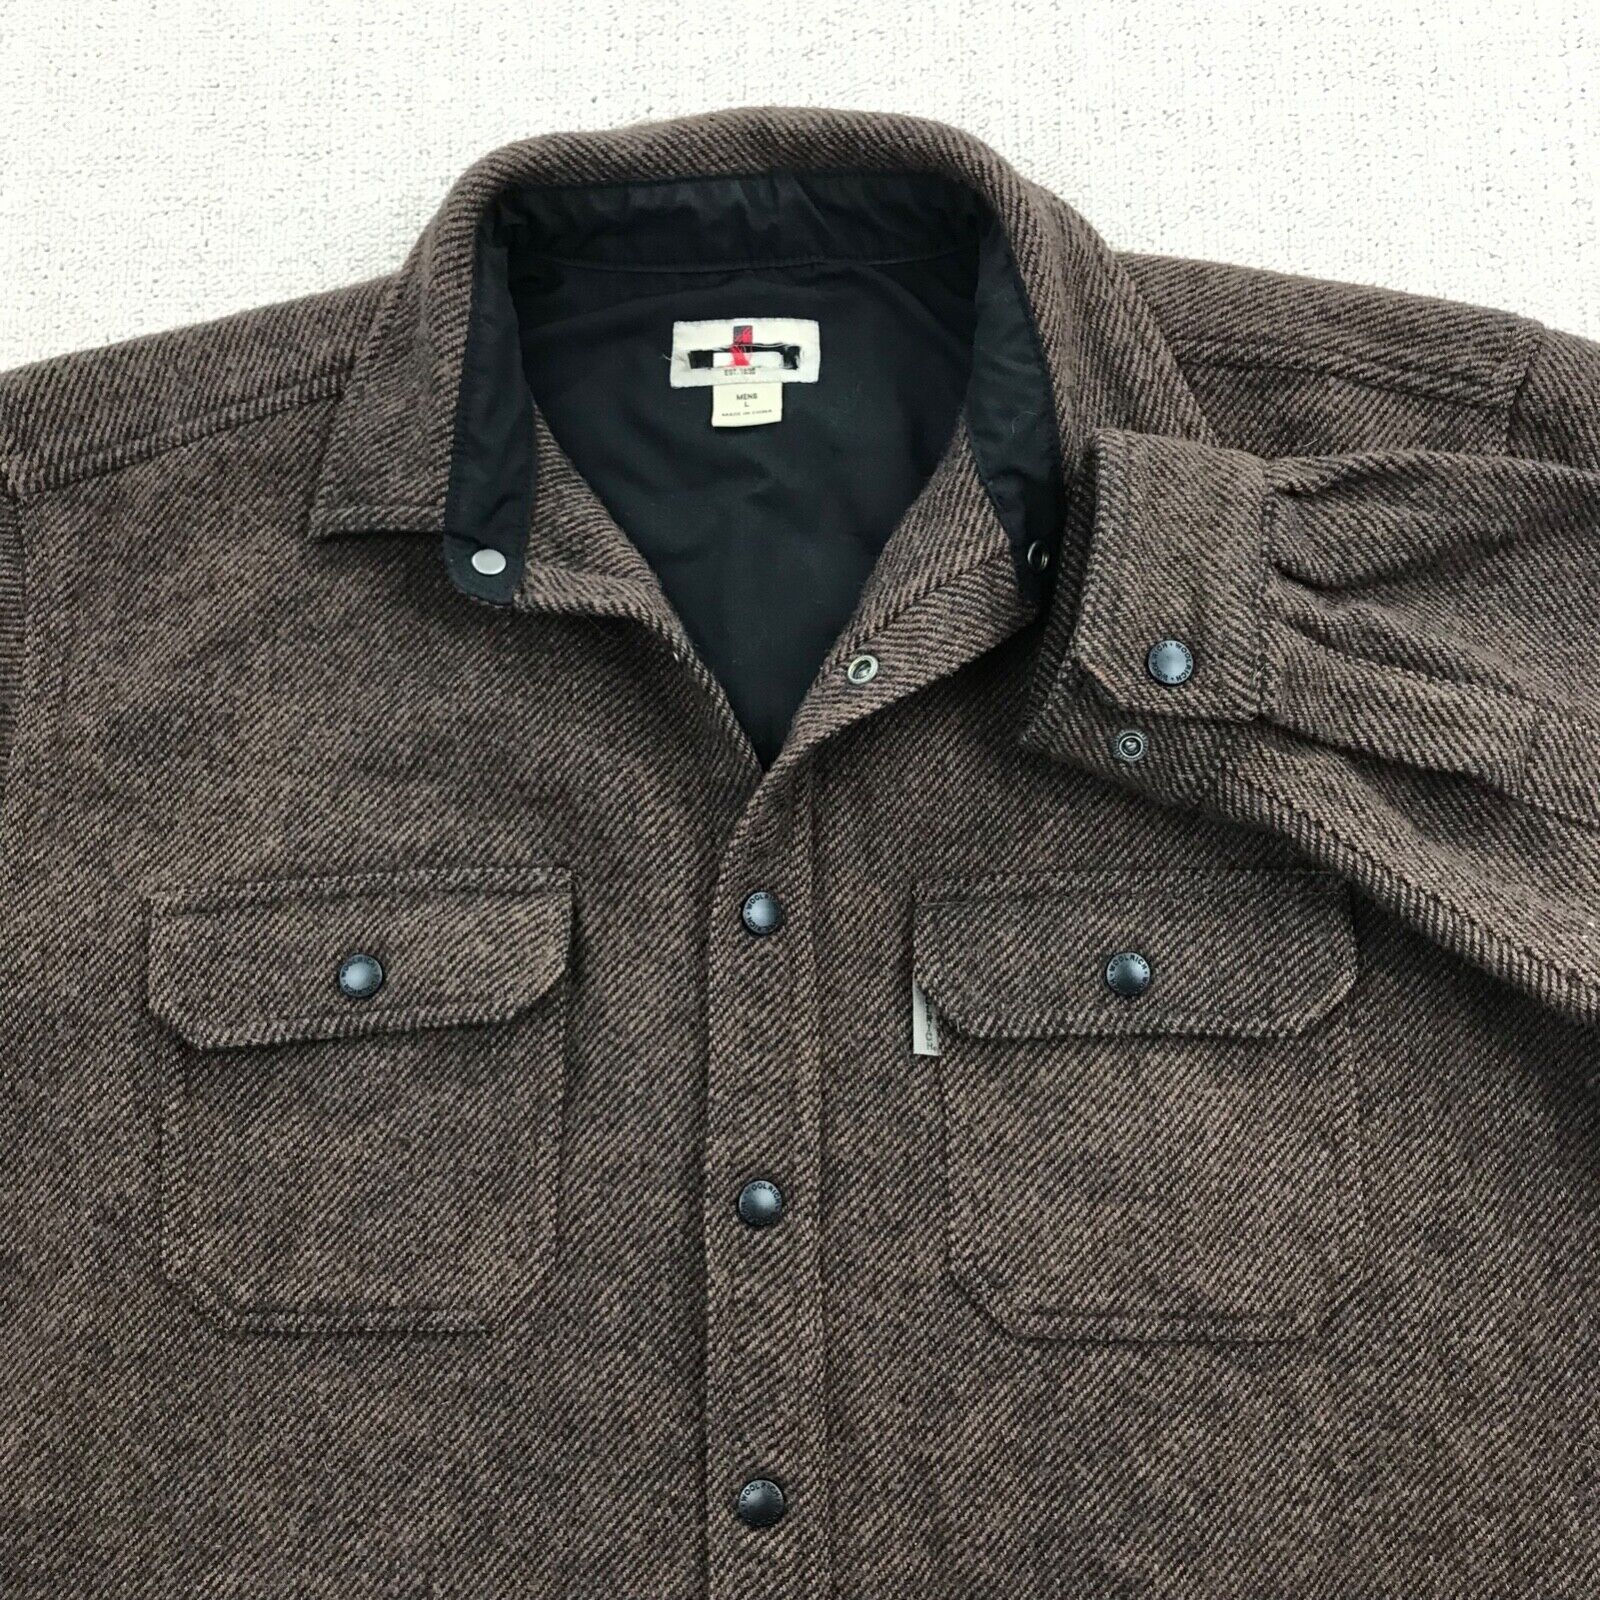 Vintage Woolrich Shirt Jacket Men Large Brown Wool Blend Snap Button Heavyweight